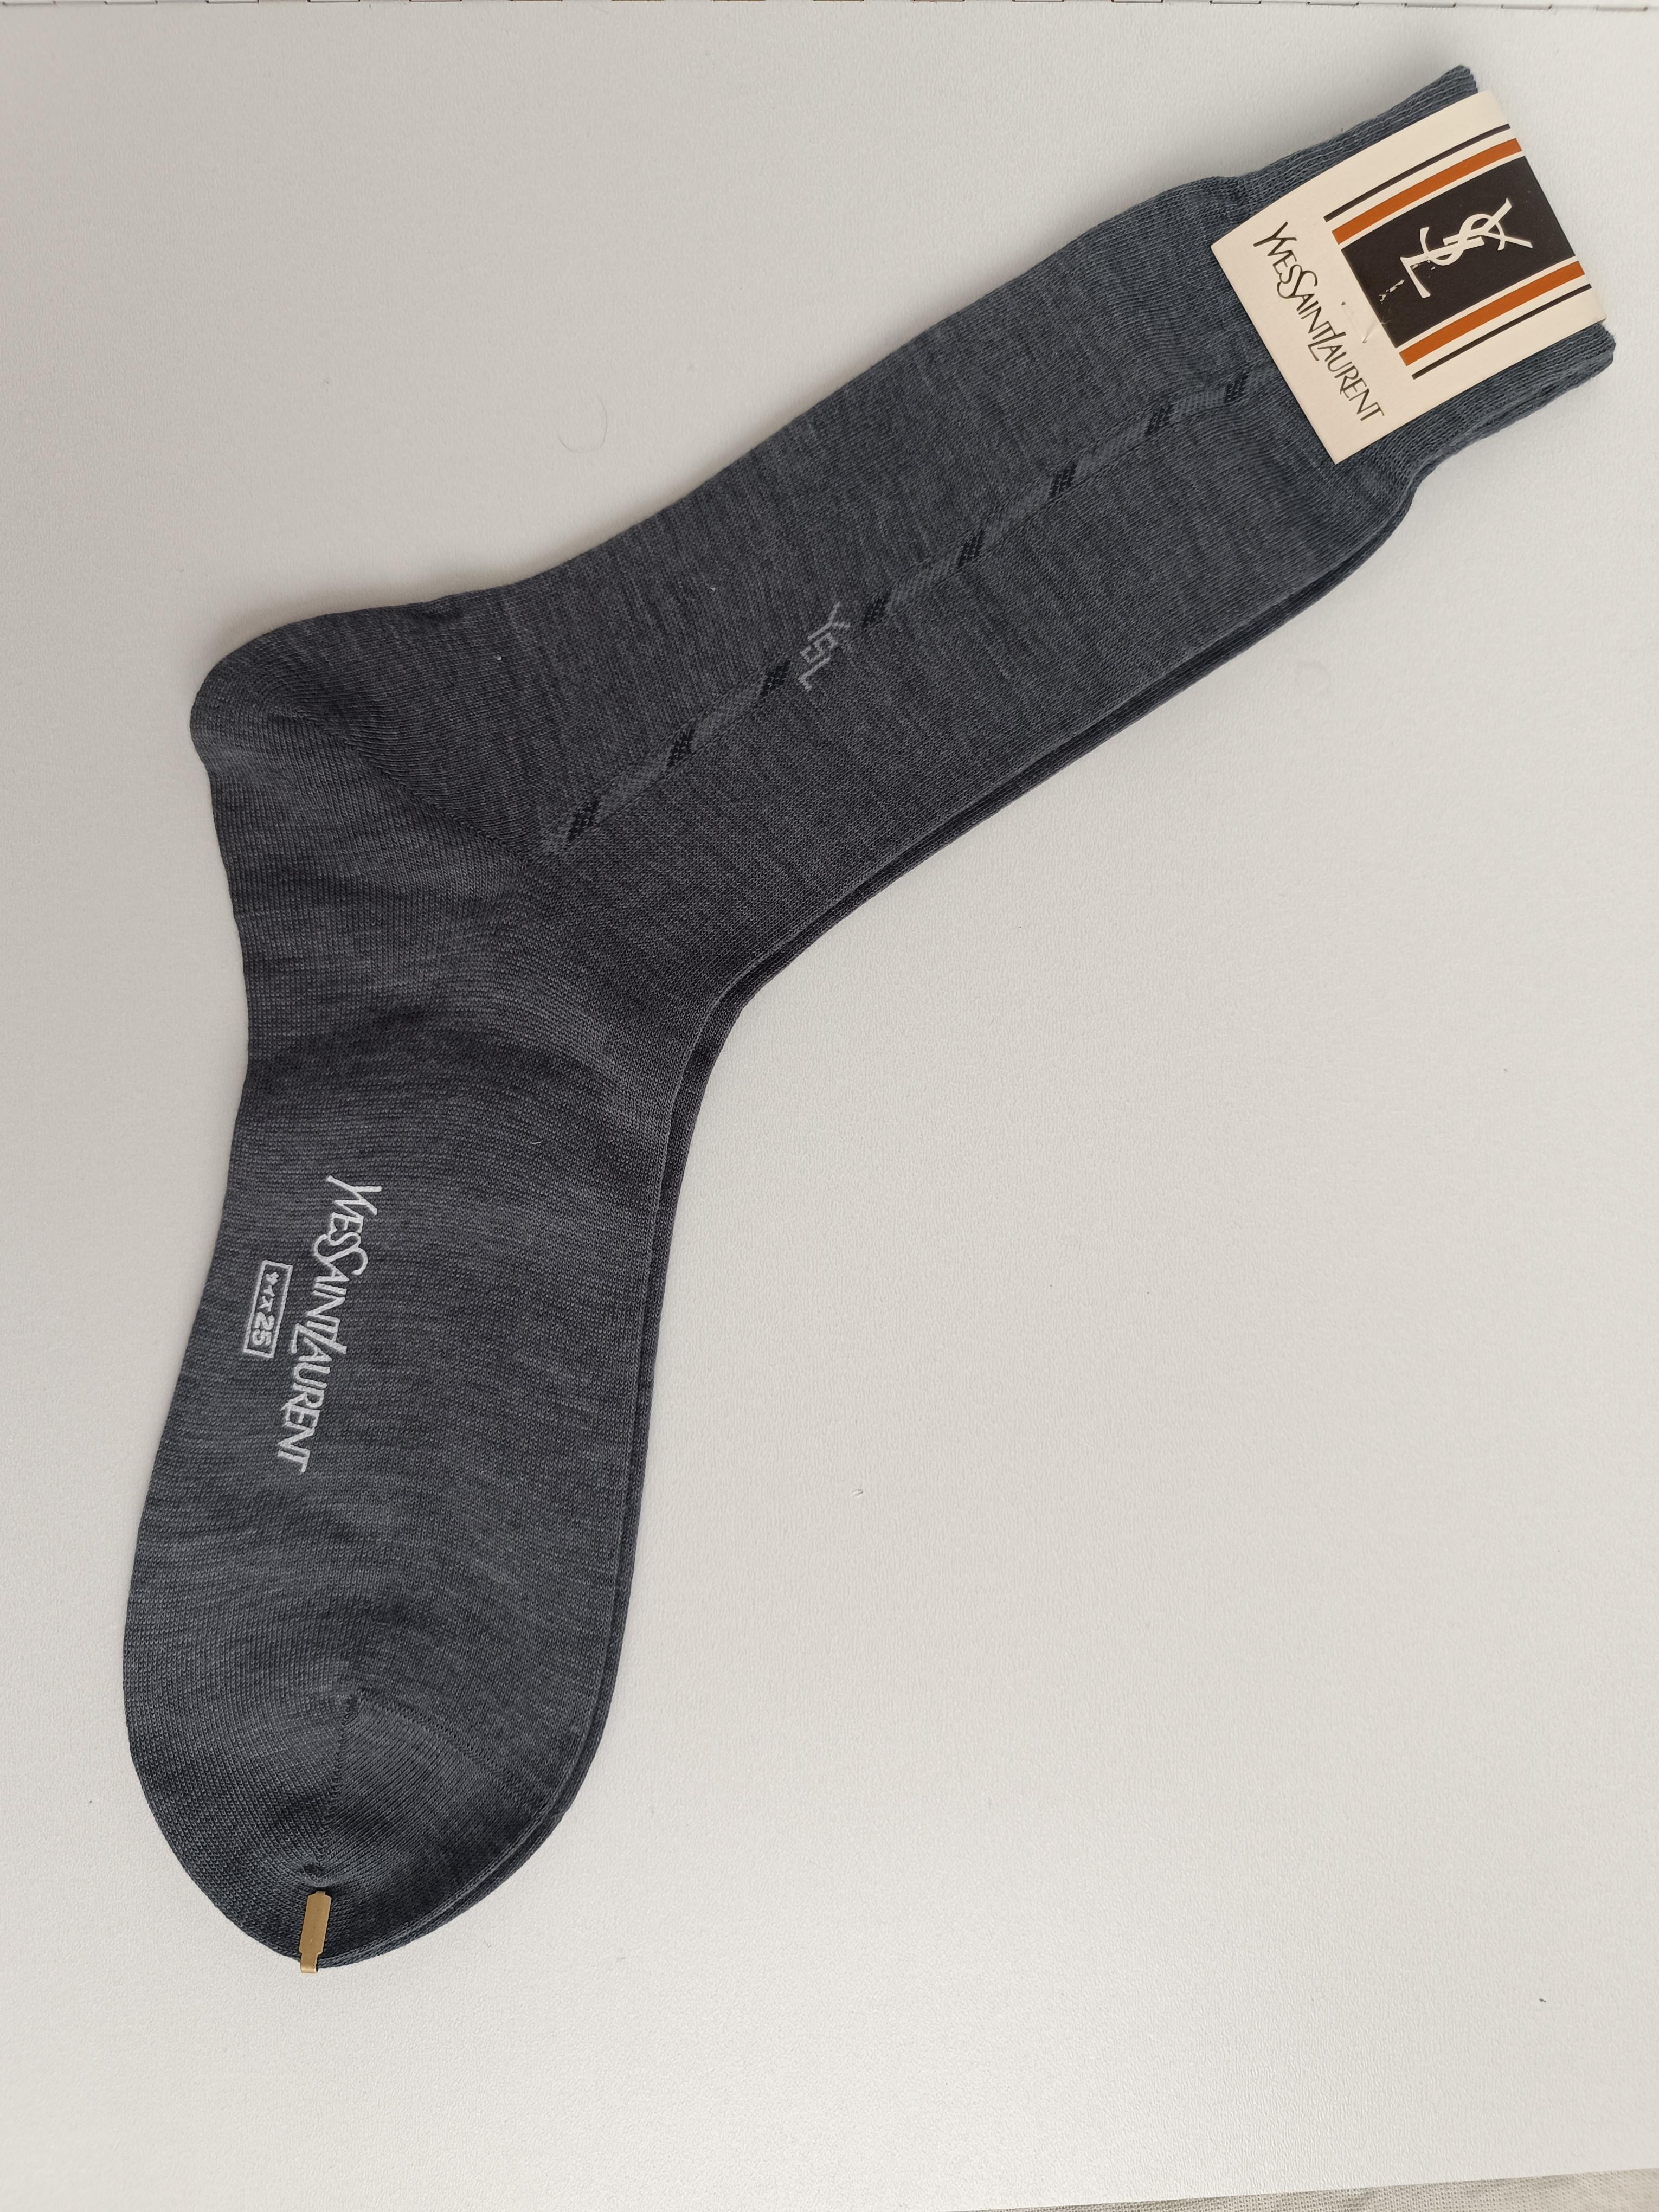 Authentique Yves Saint Laurent Vintage Chaussettes Hommes YSL
Pays de fabrication : Japon
Couleur : gris et bleu
Unisexe.
Il est idéal à porter ou à offrir !
Nous nous efforçons d'assurer un contrôle de qualité élevé, et les défauts plus importants